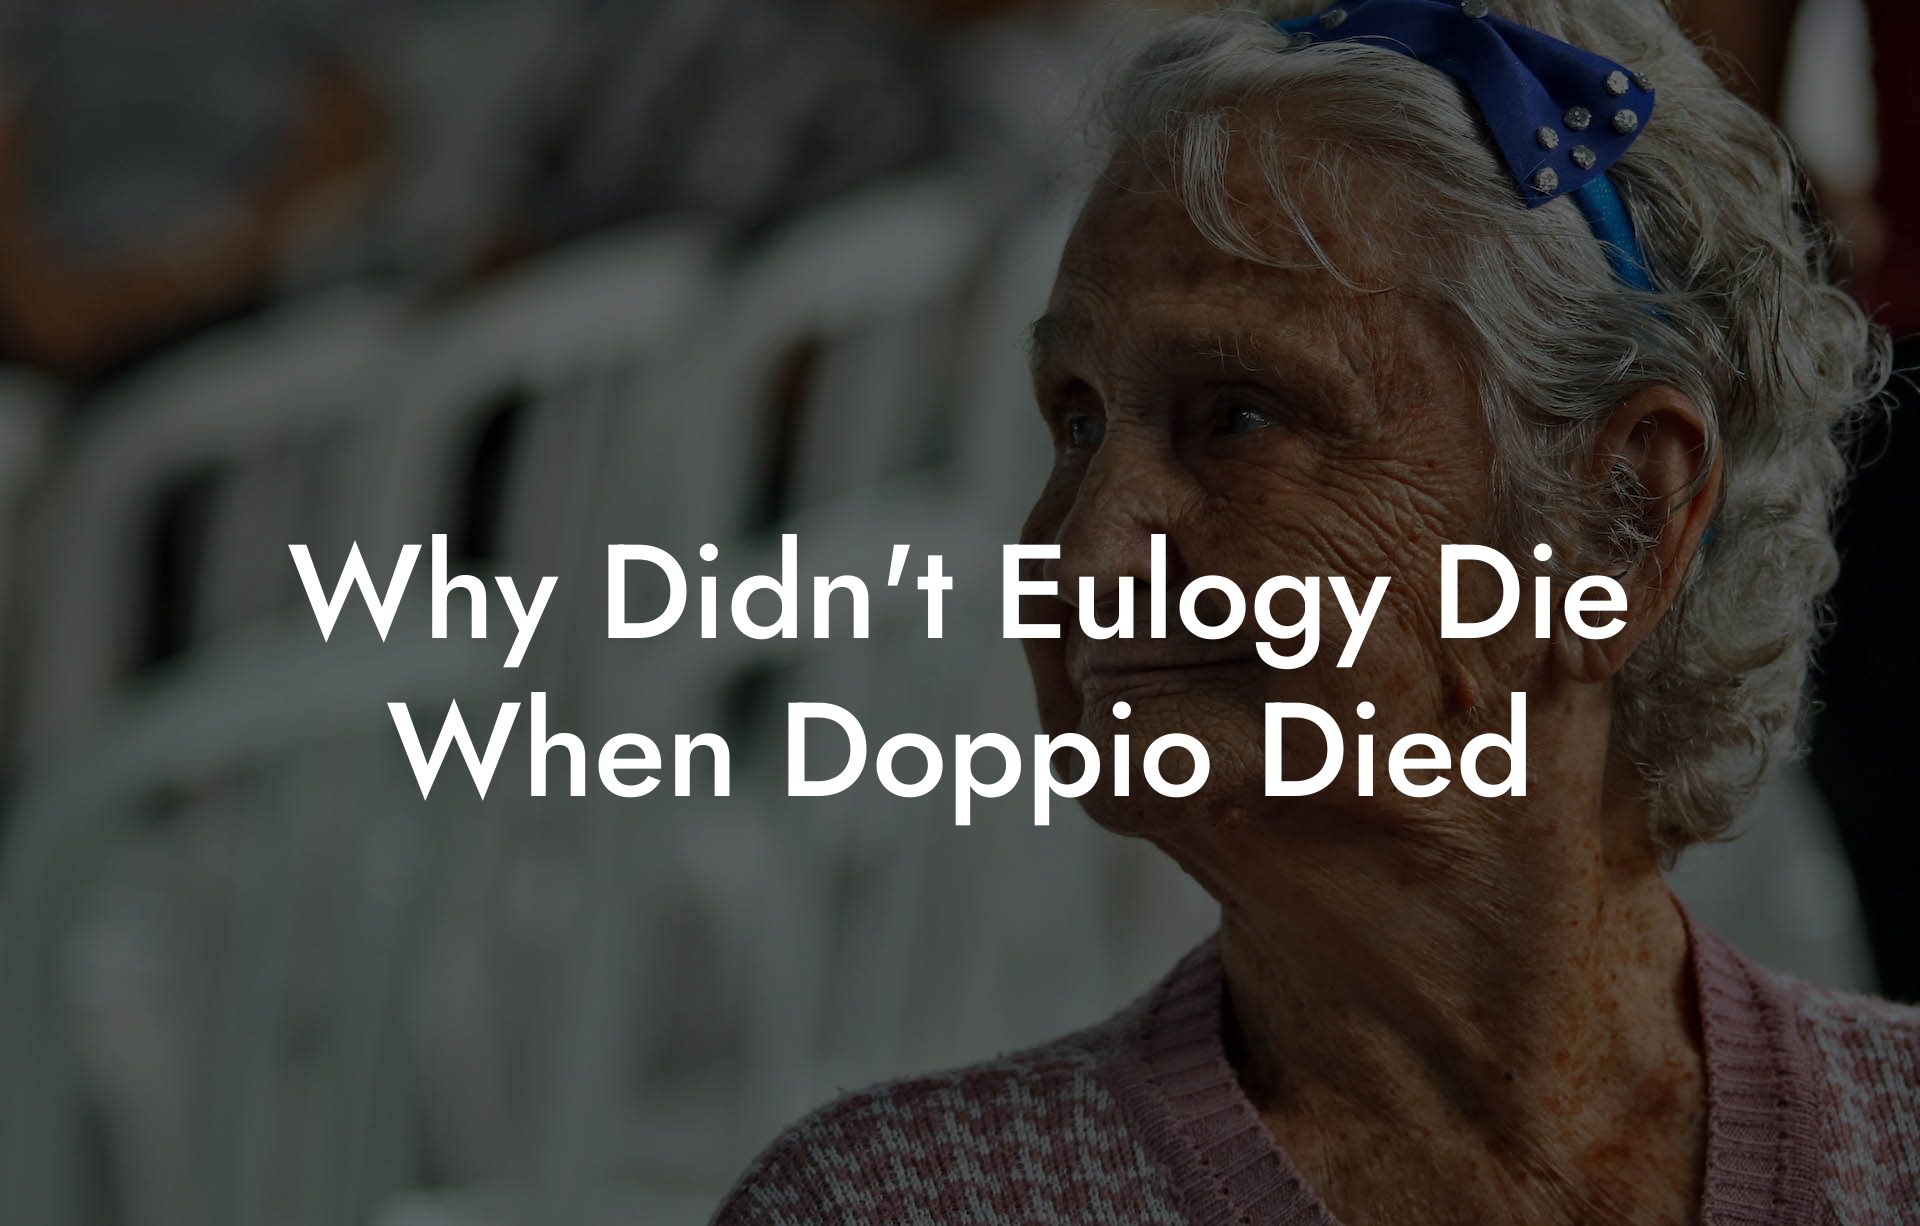 Why Didn't Eulogy Die When Doppio Died